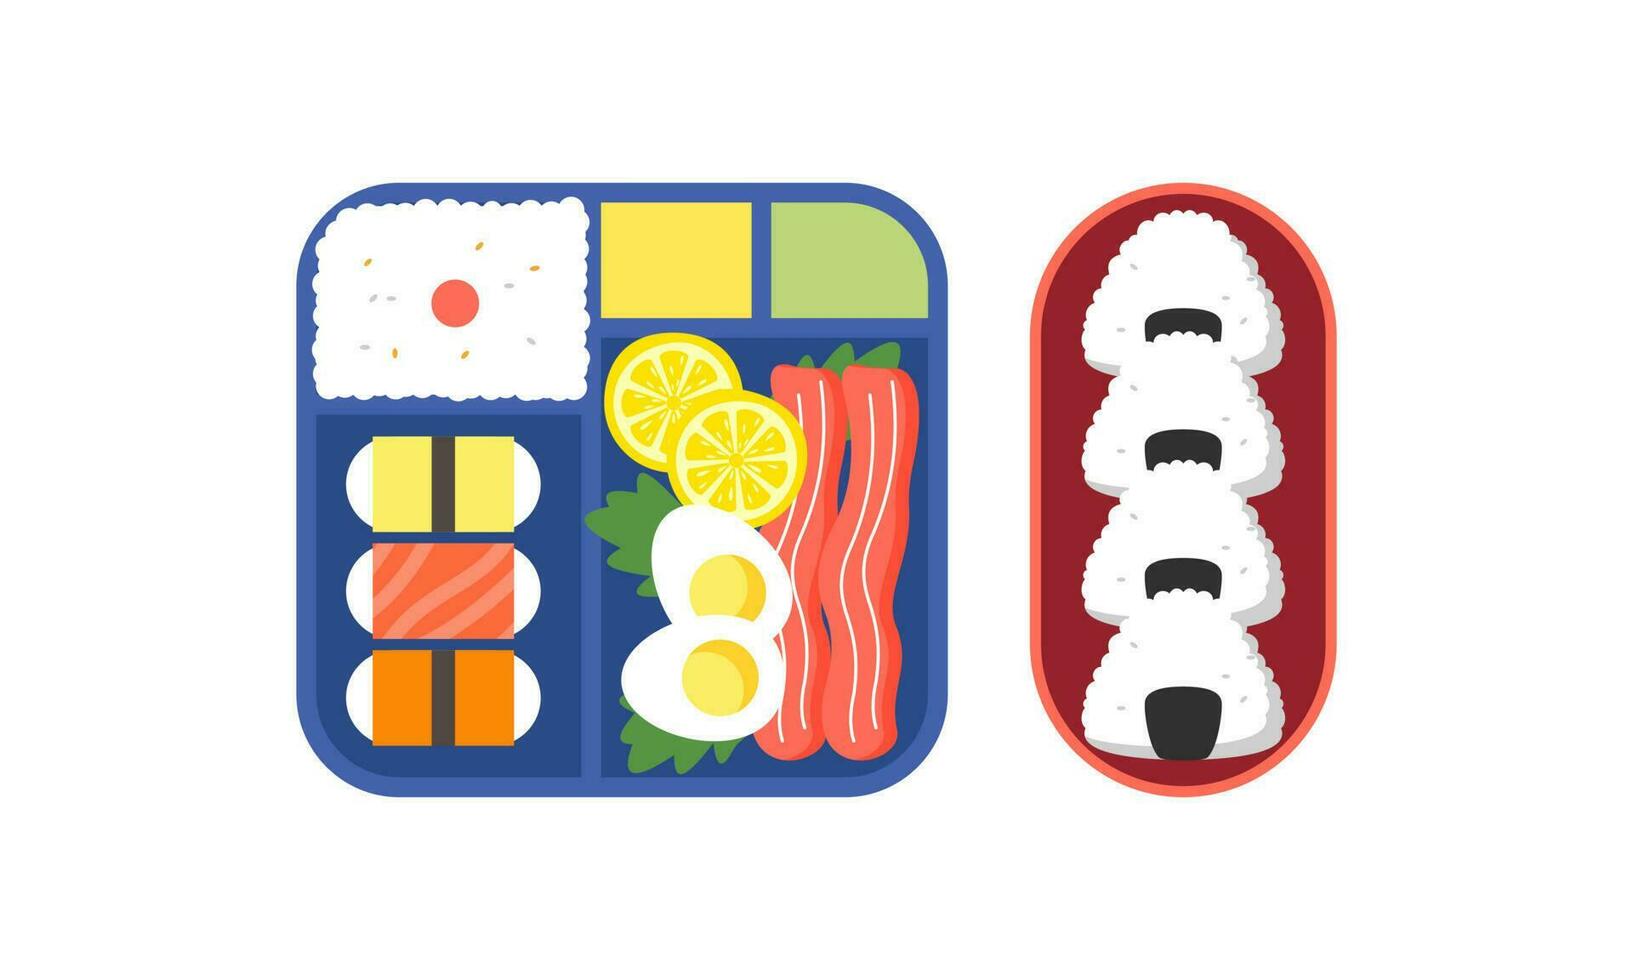 bento boîte logo. Japonais le déjeuner boîte. divers traditionnel asiatique nourriture dessin animé style vecteur